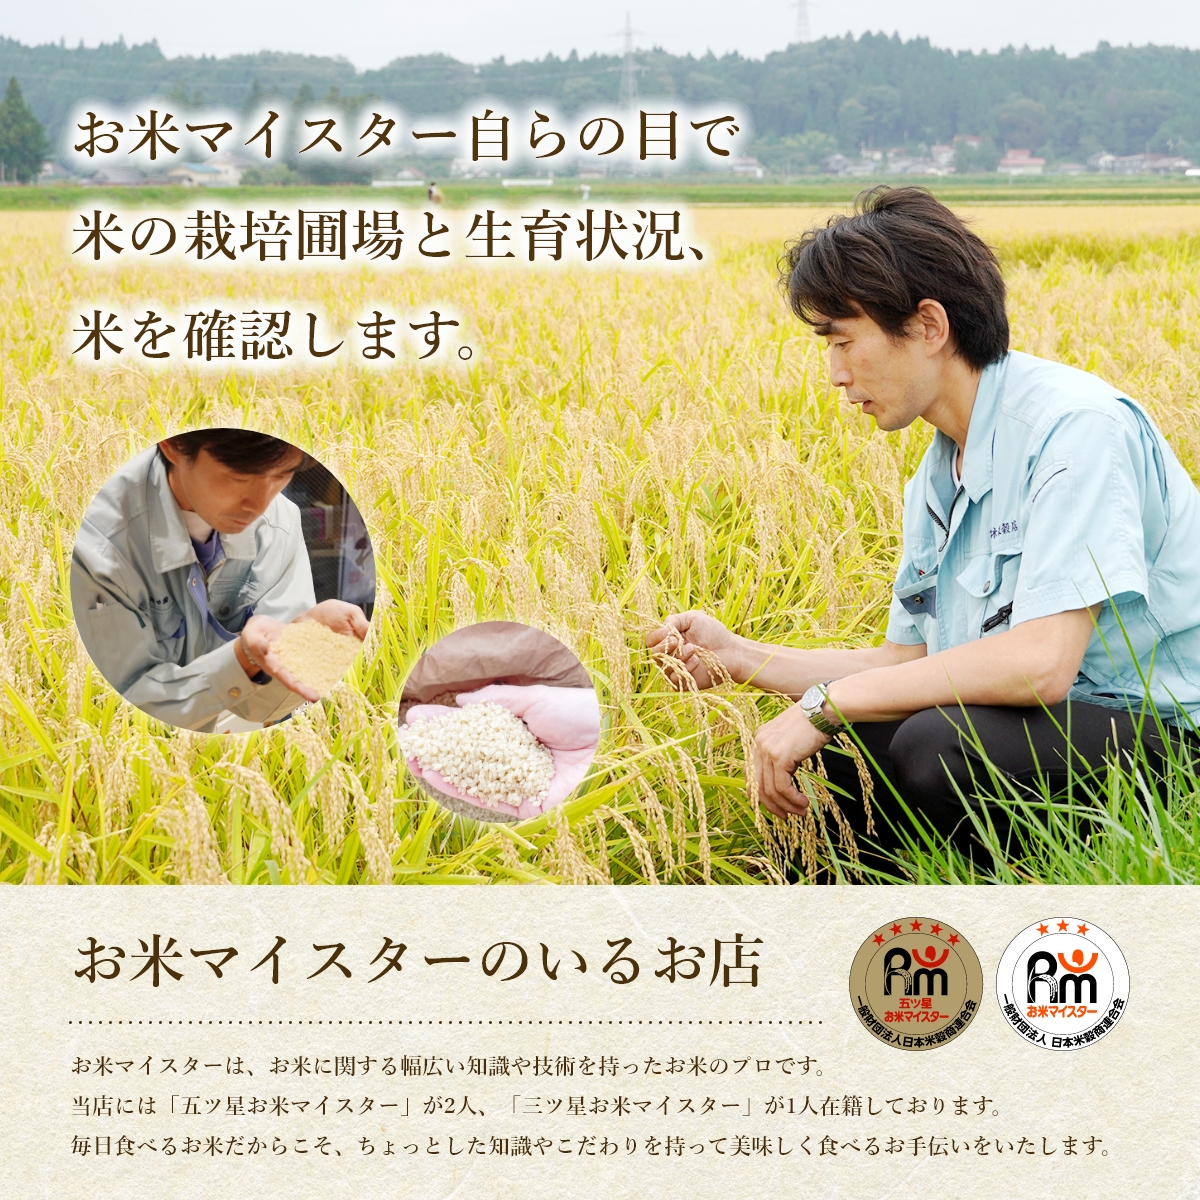 【3か月定期便】盛岡市産お米3種食べ比べ【10kg×3袋】×3か月